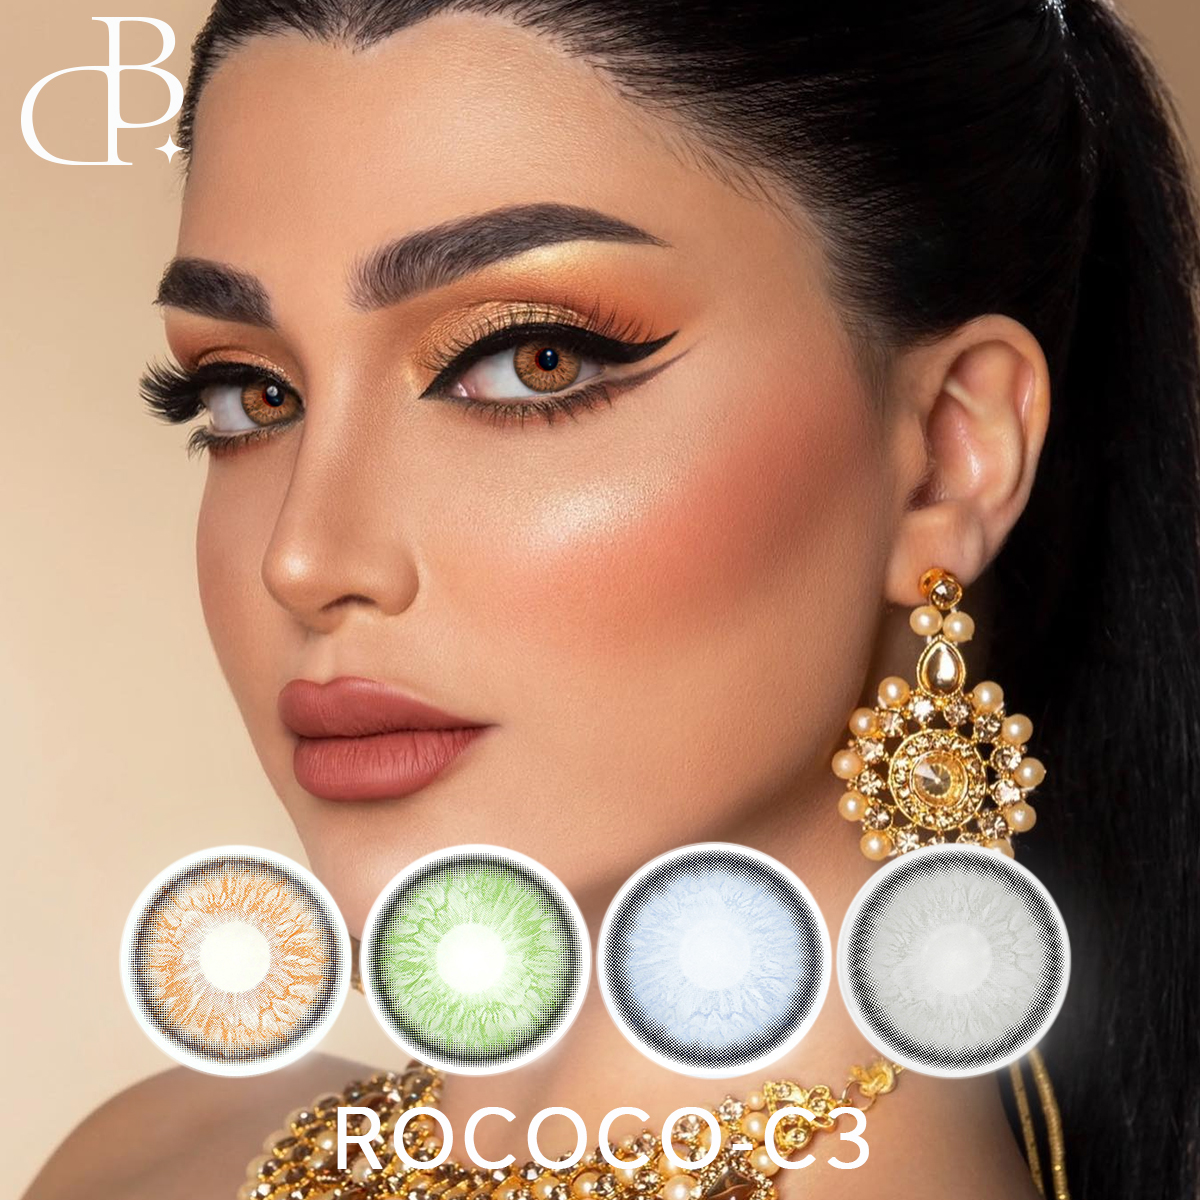 ROCOCO-3 nyt udseende kosmetisk engros farve kontaktlinser billige bløde årlige øjenfarvede kontaktlinser